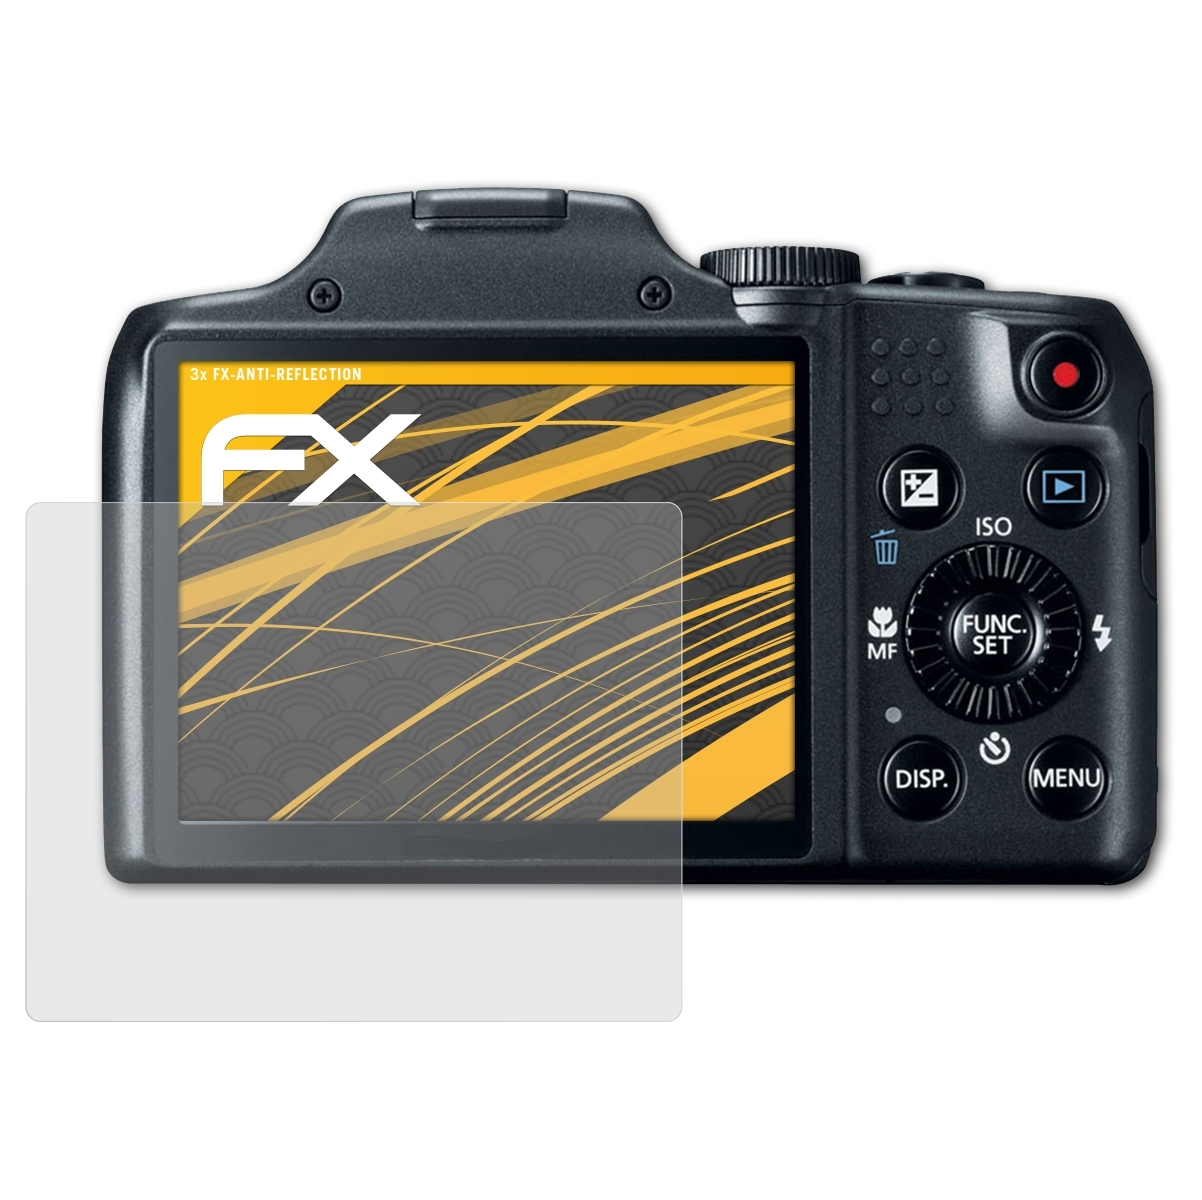 SX170 ATFOLIX Canon IS) FX-Antireflex 3x Displayschutz(für PowerShot